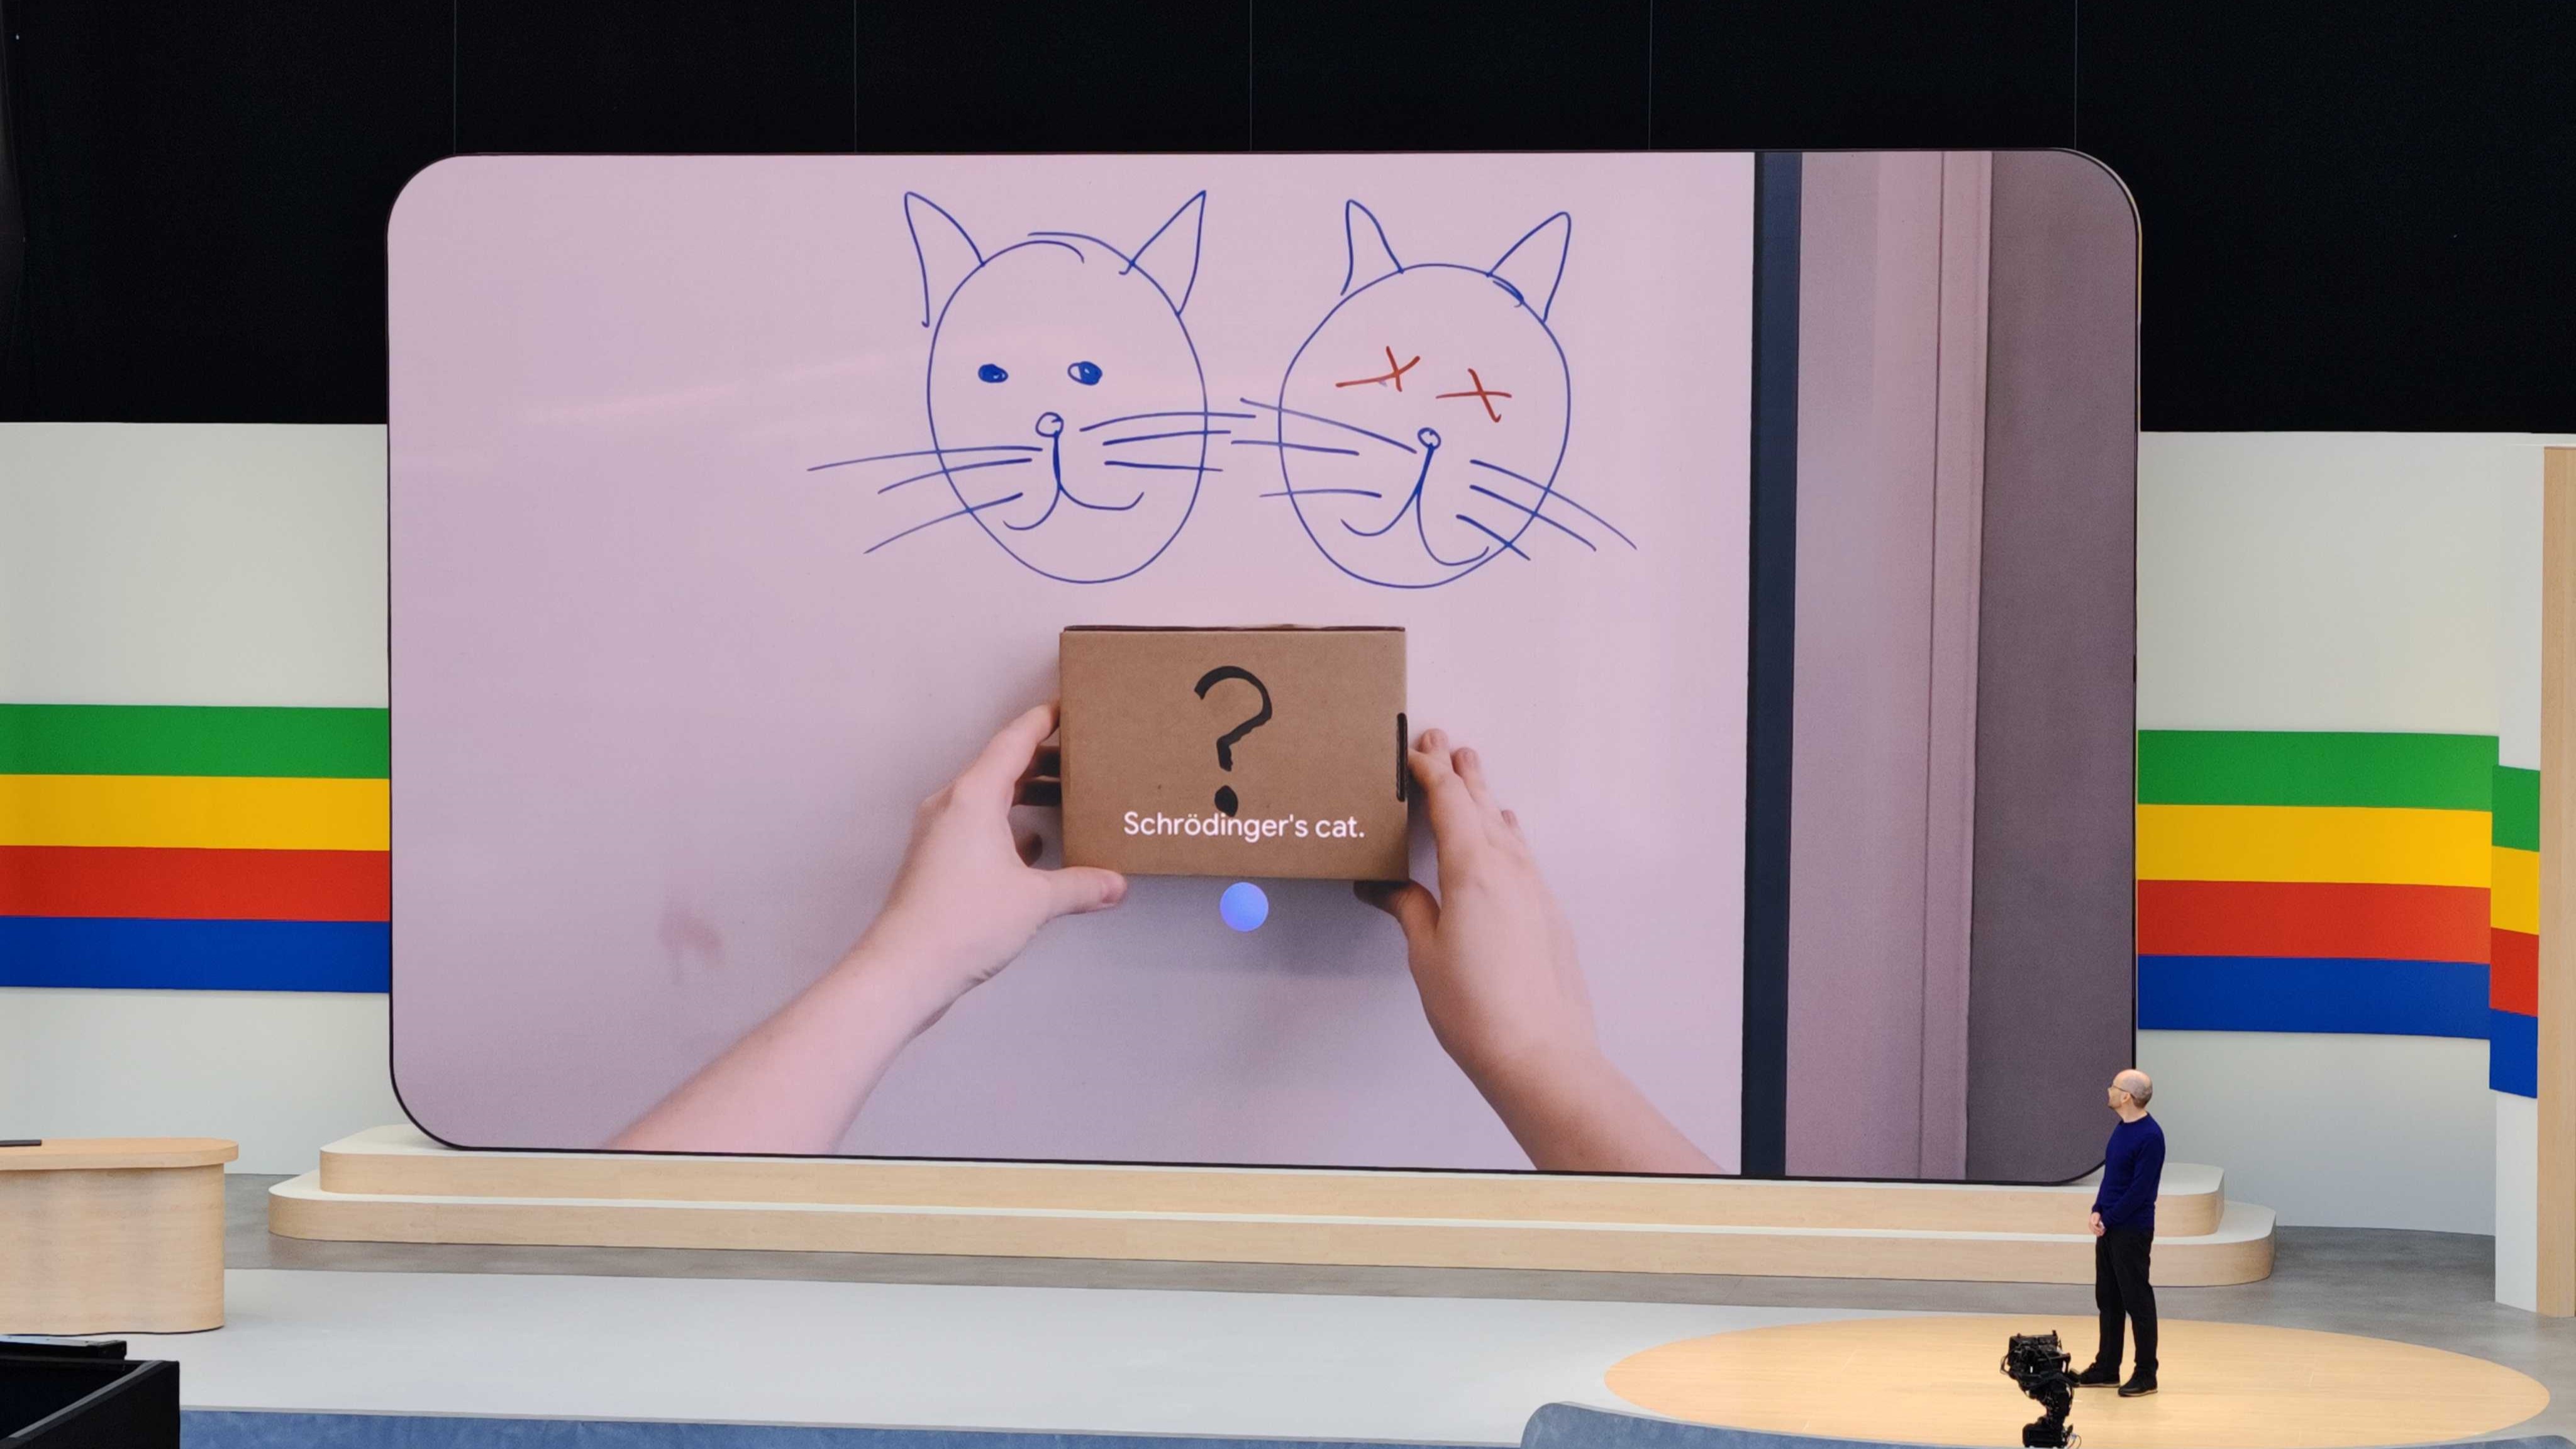 Le projet Astra de Google Gemini dit "Le chat de Schrödinger" en regardant deux chats dessinés et une boîte avec un point d'interrogation dessus